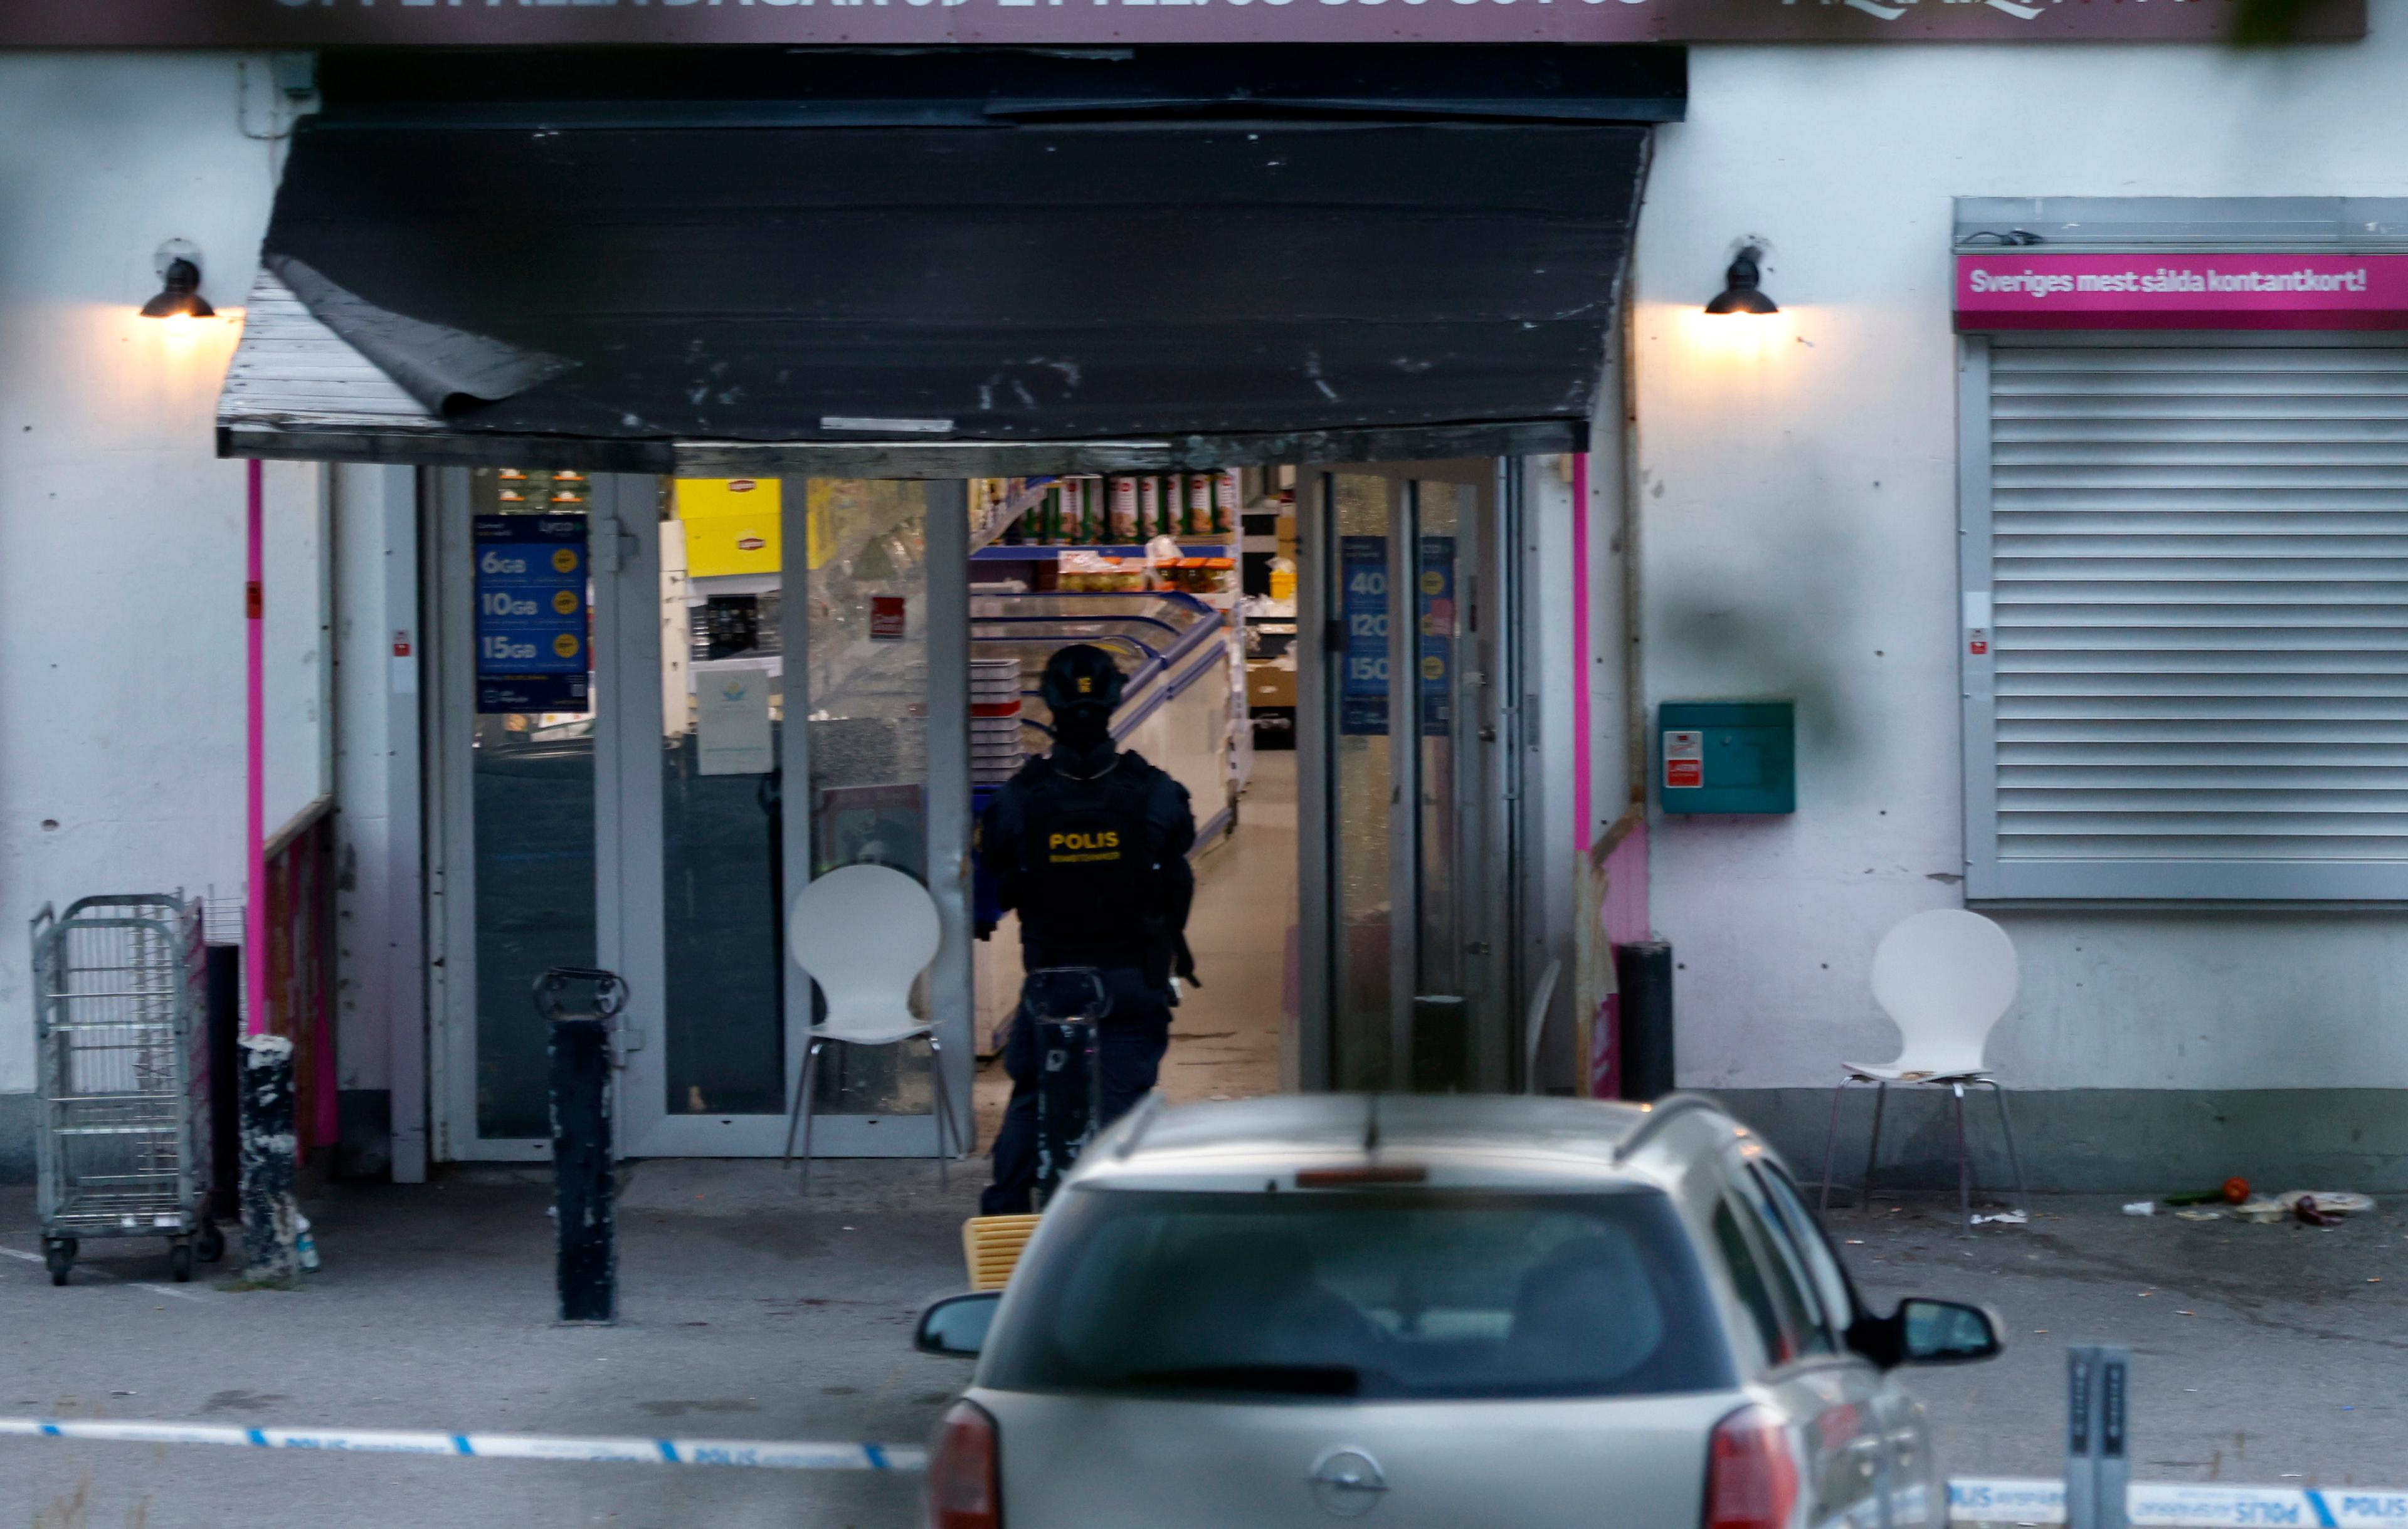 Polis och räddningstjänst på plats efter en explosion i en butik i Geneta i Södertälje på måndagskvällen. Foto: Mickan Mörk/TT